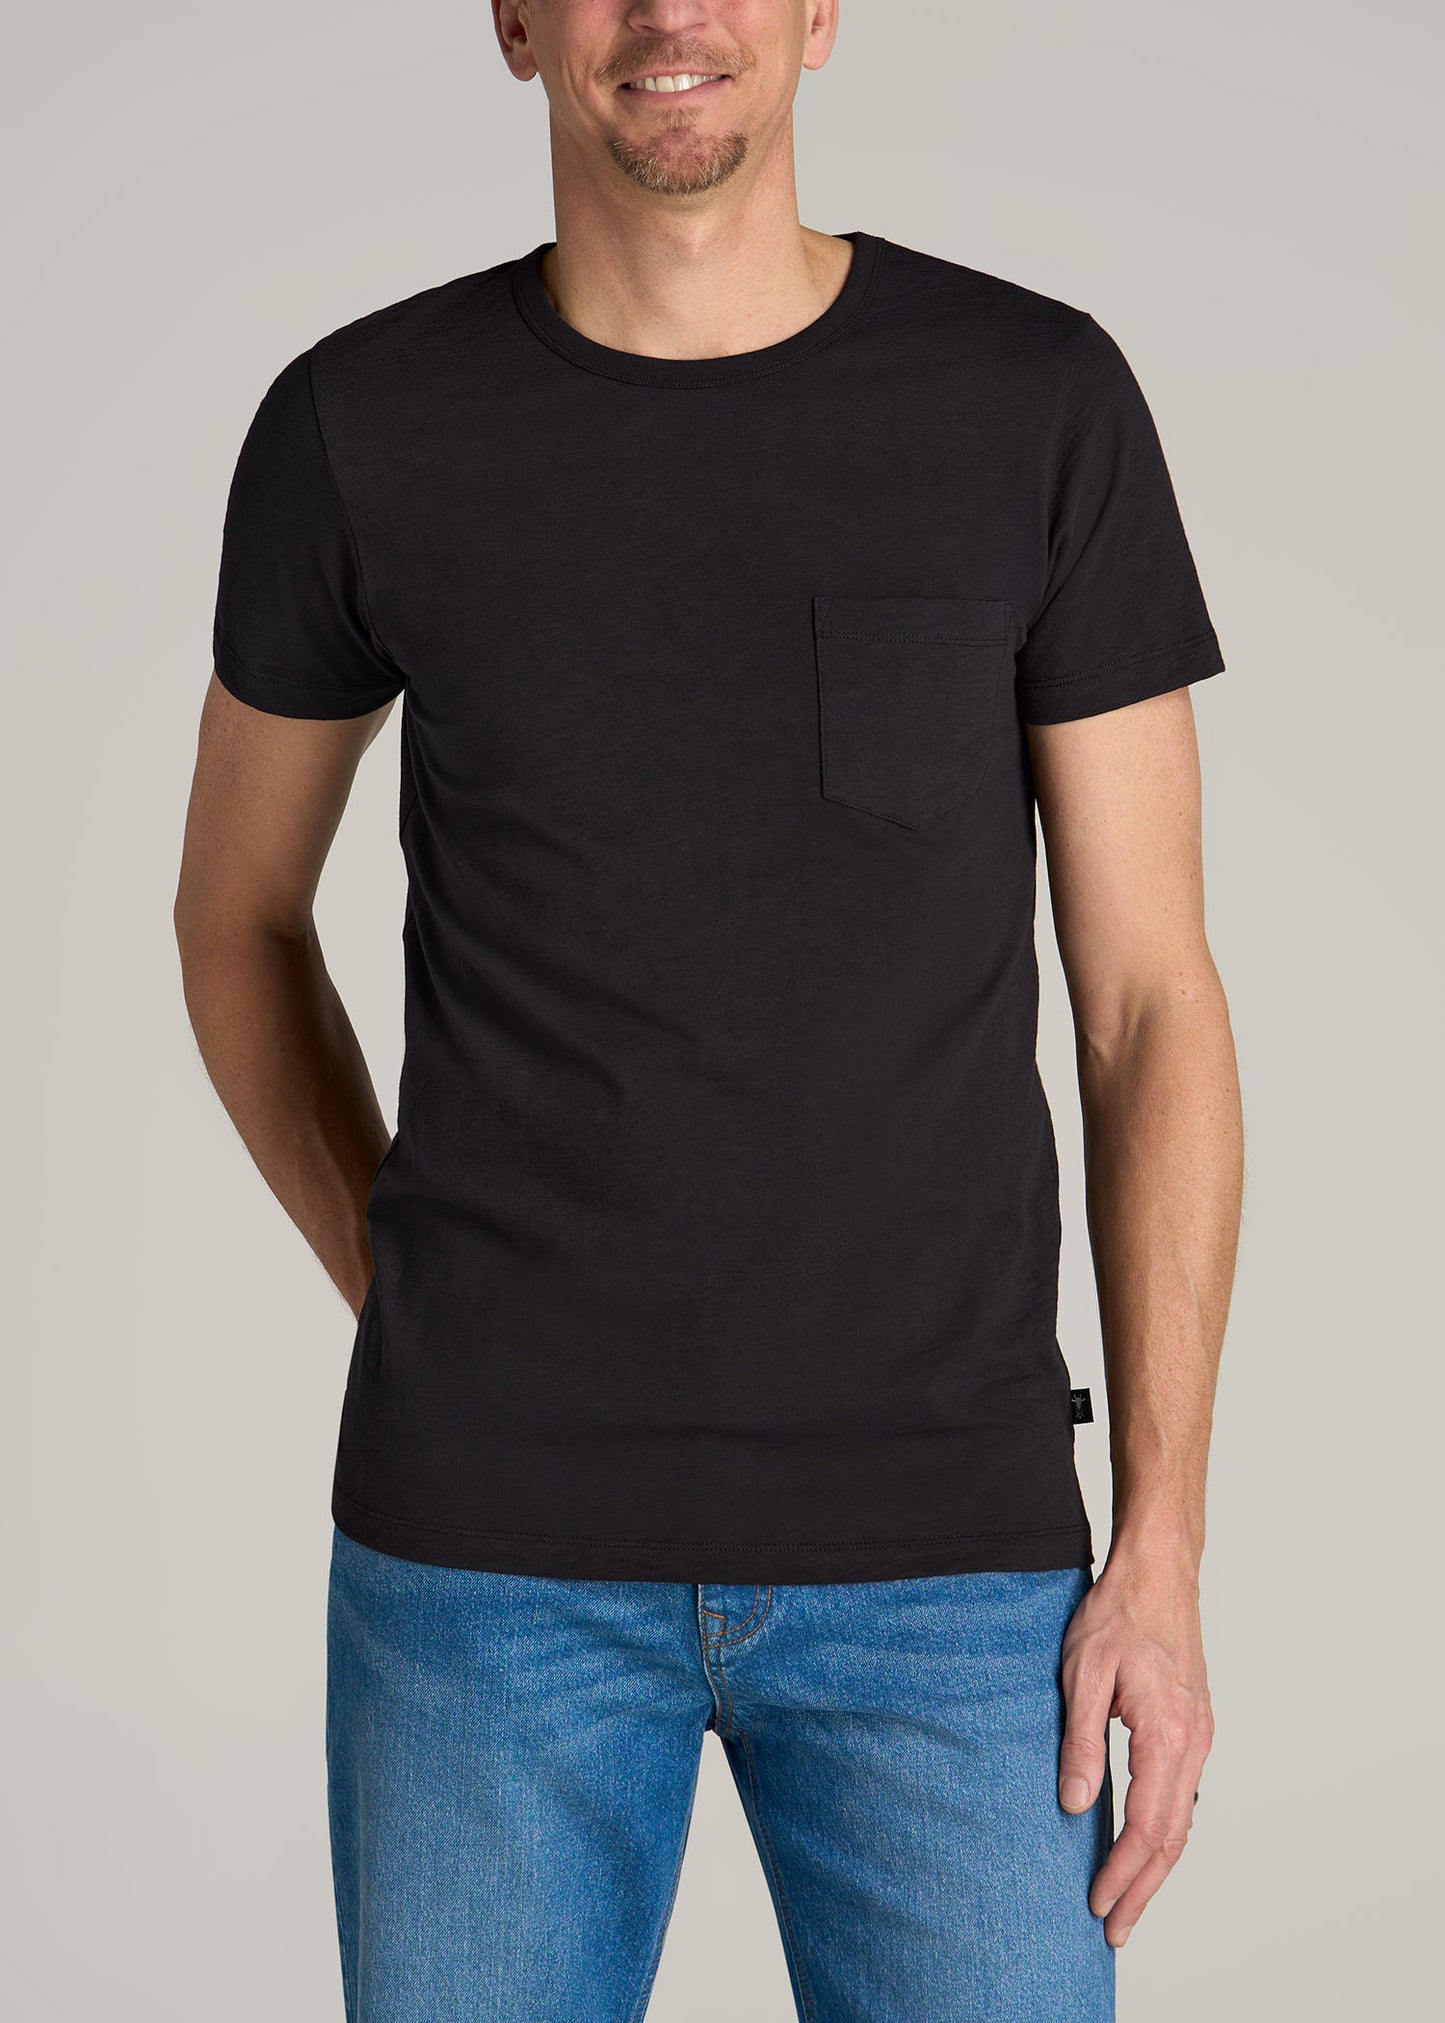 Sunwashed Slub Pocket T-Shirt For Tall Men in Washed Black